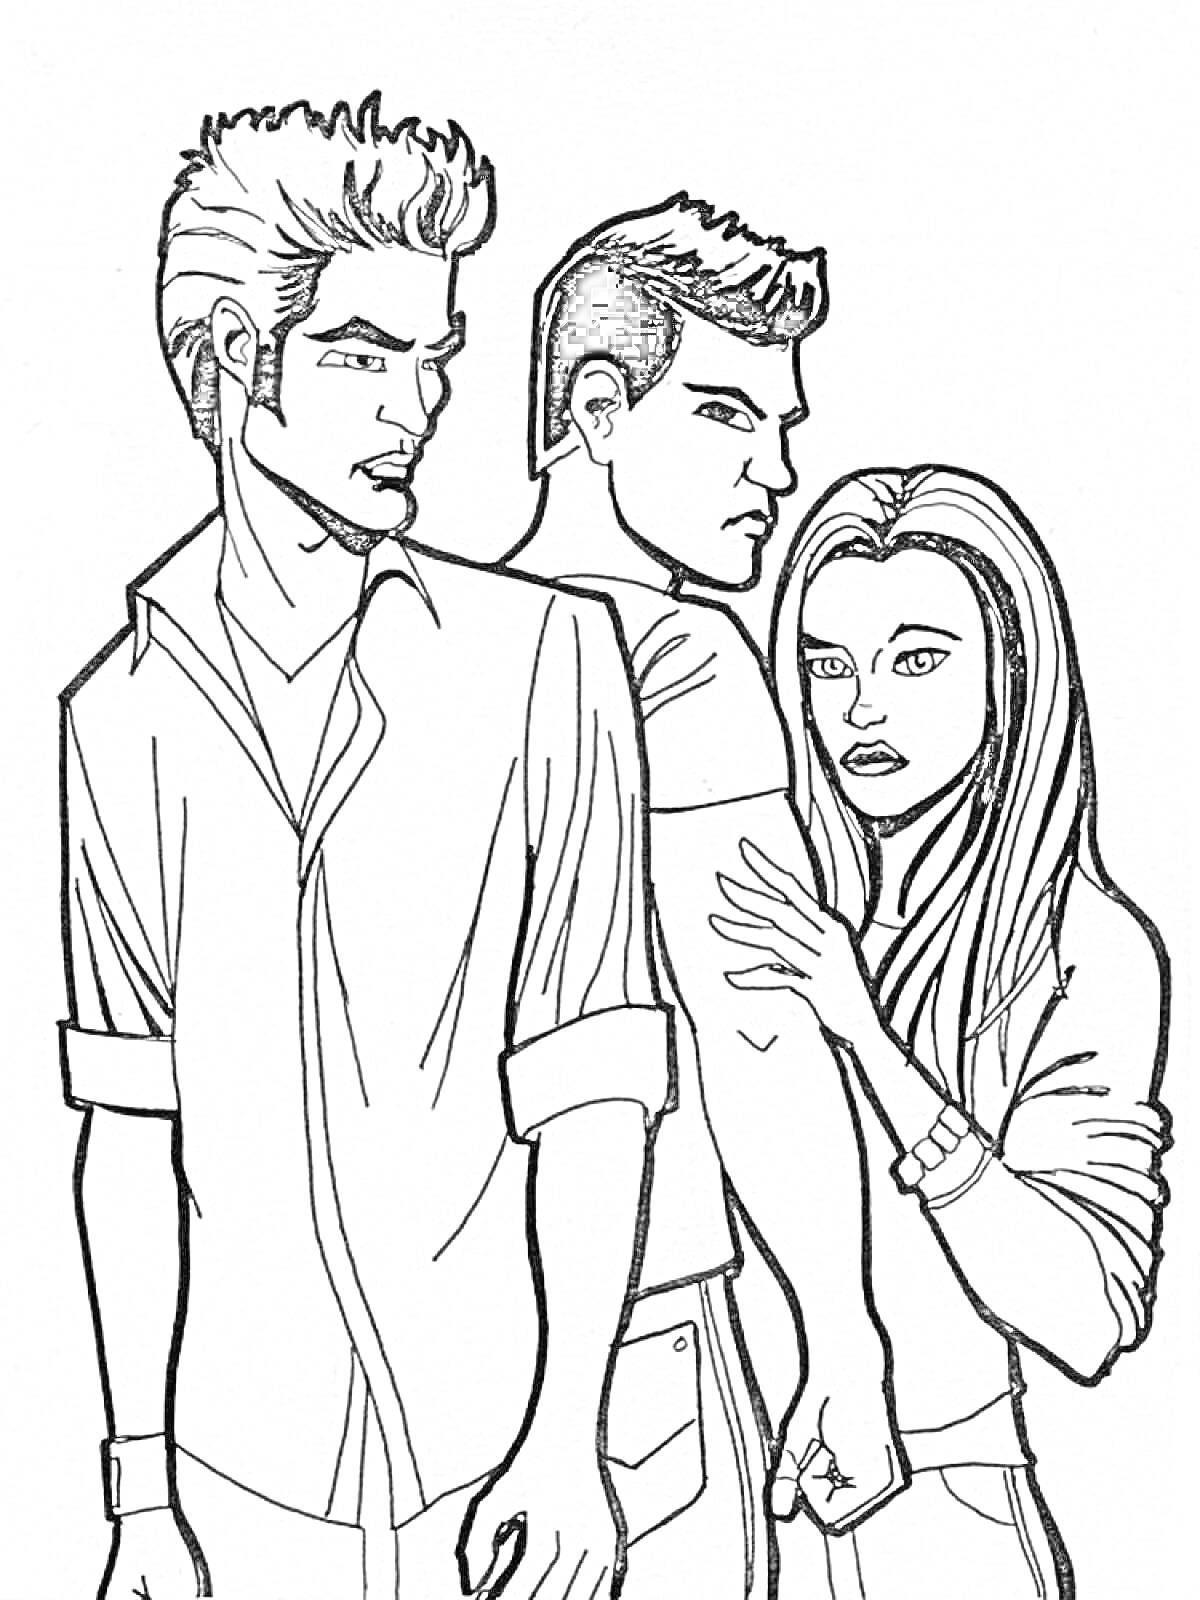 Три персонажа; мужчина с короткими волосами и рубашкой, мужчина с короткими волосами в футболке, девушка с длинными волосами и футболкой; девушка держит руку мужчины.